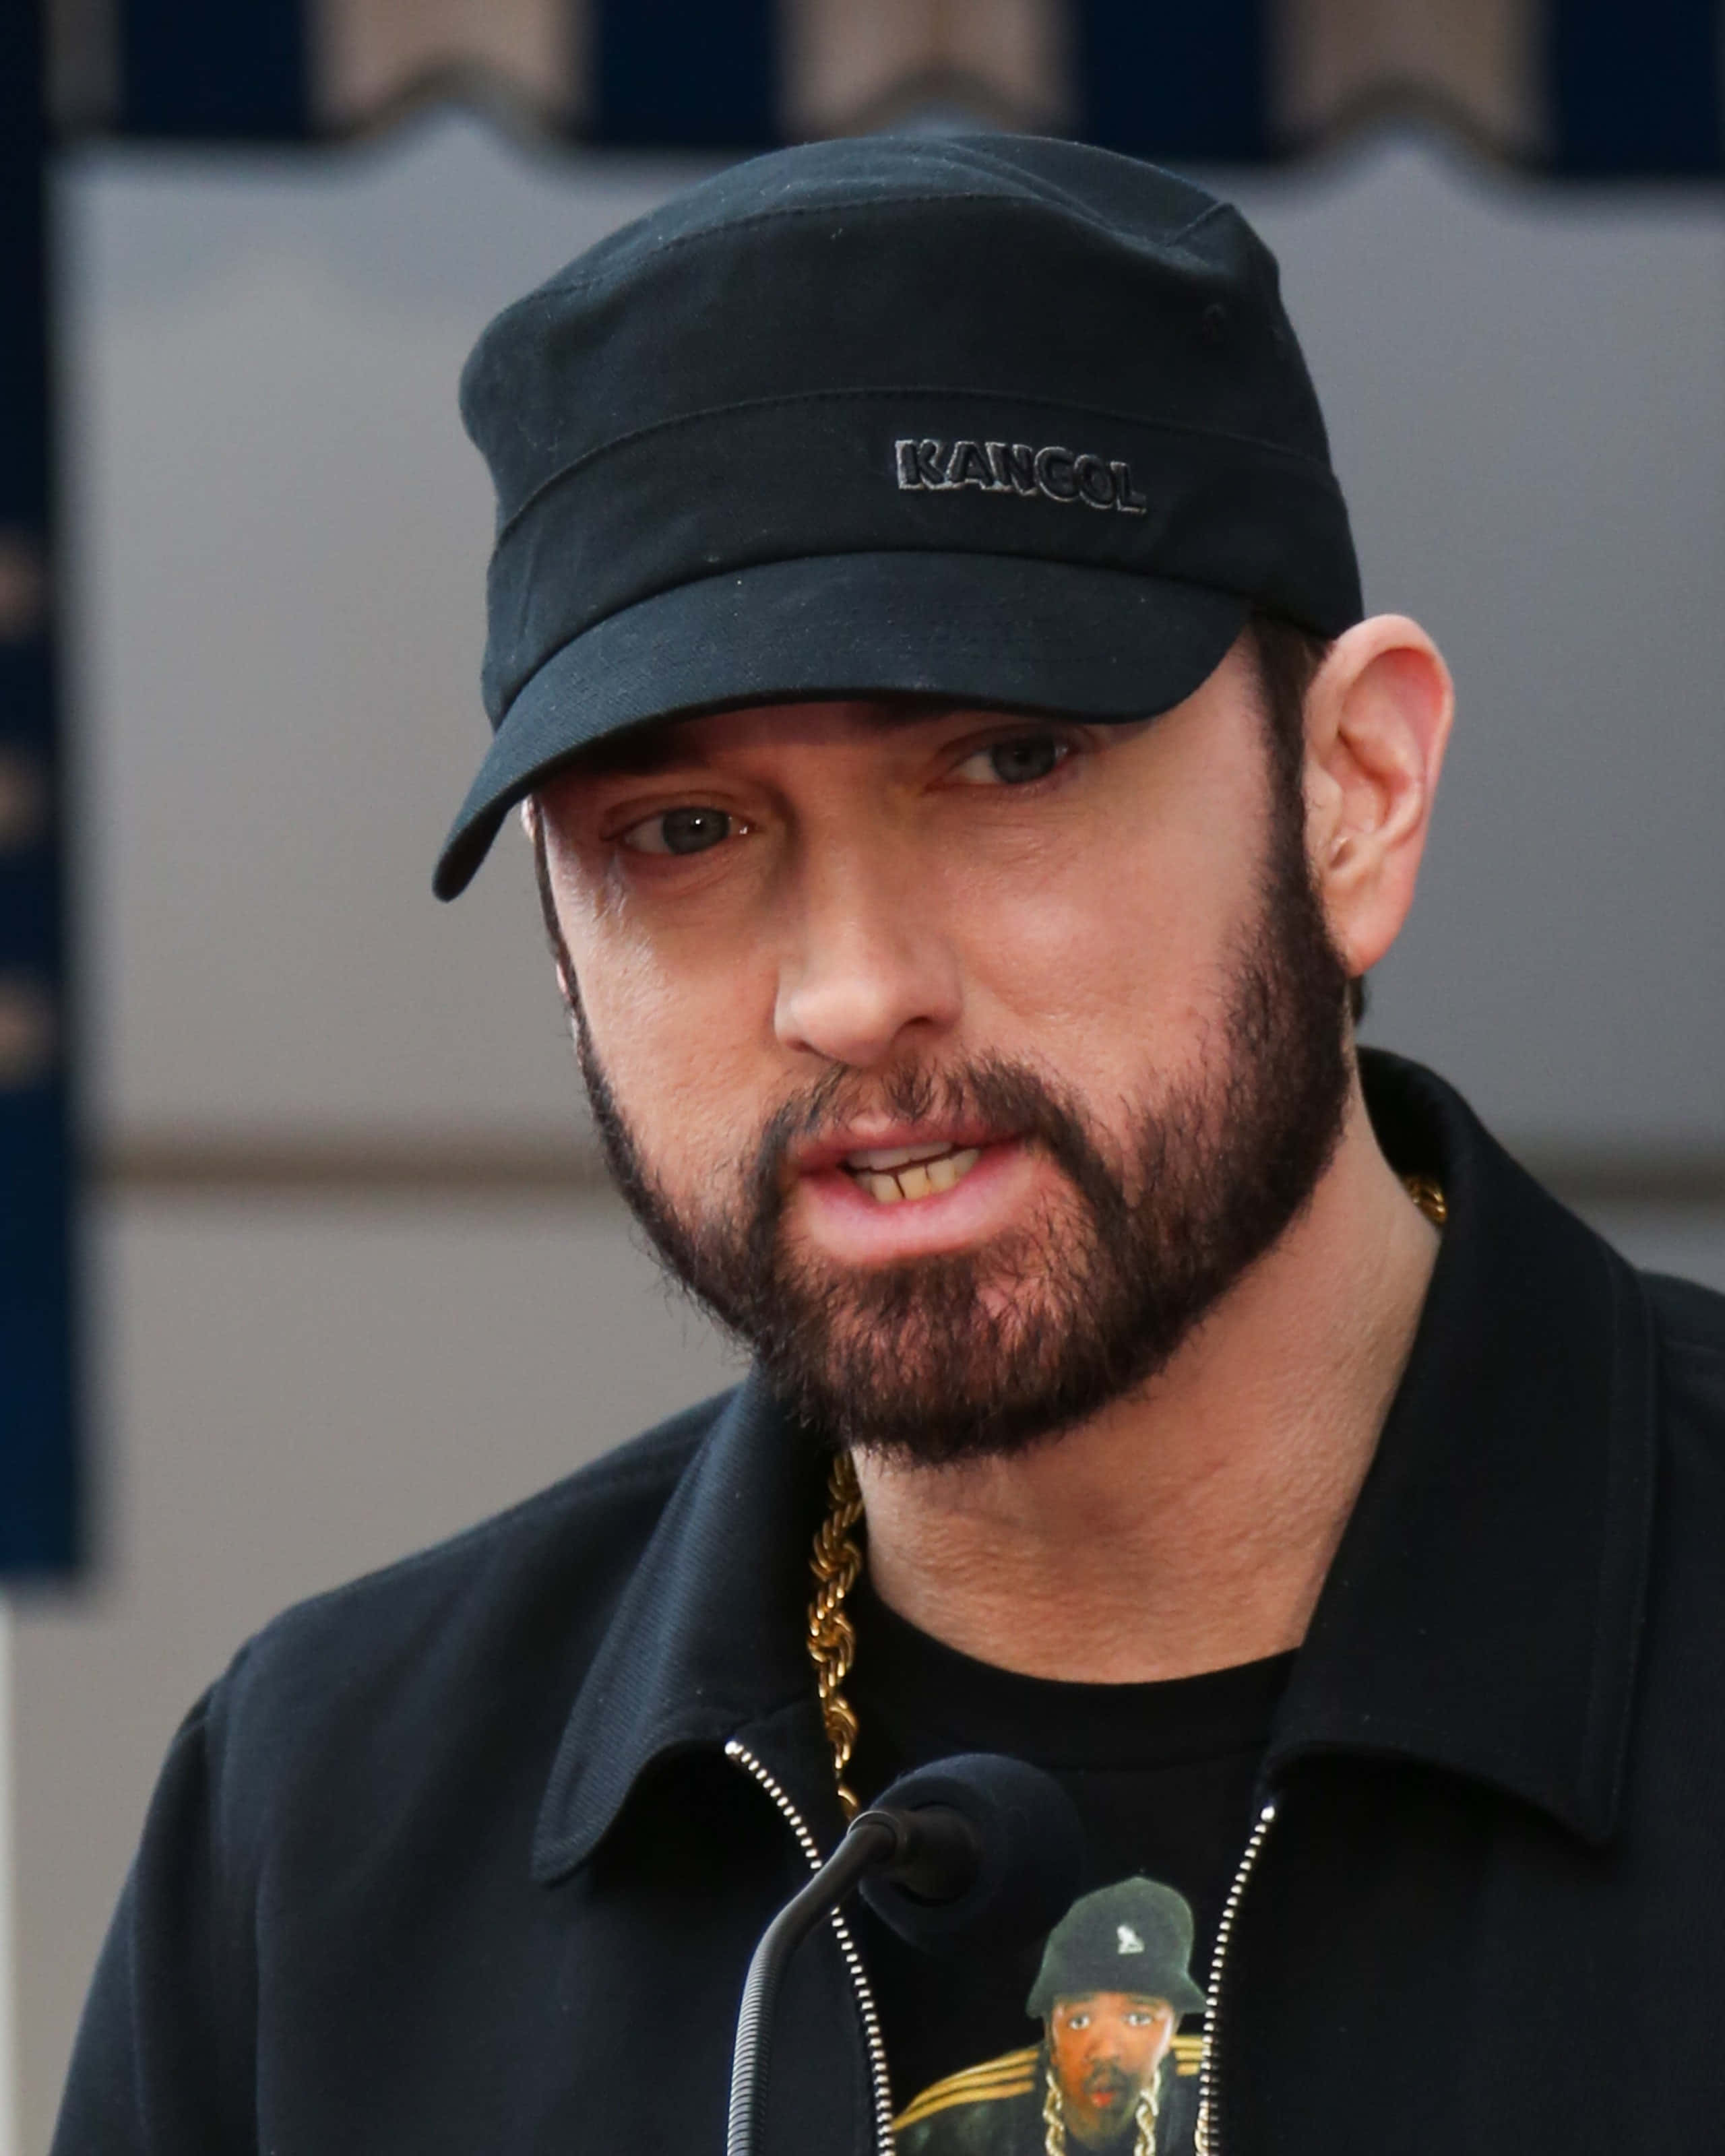 Eminemsul Palco: Crudo E Potente